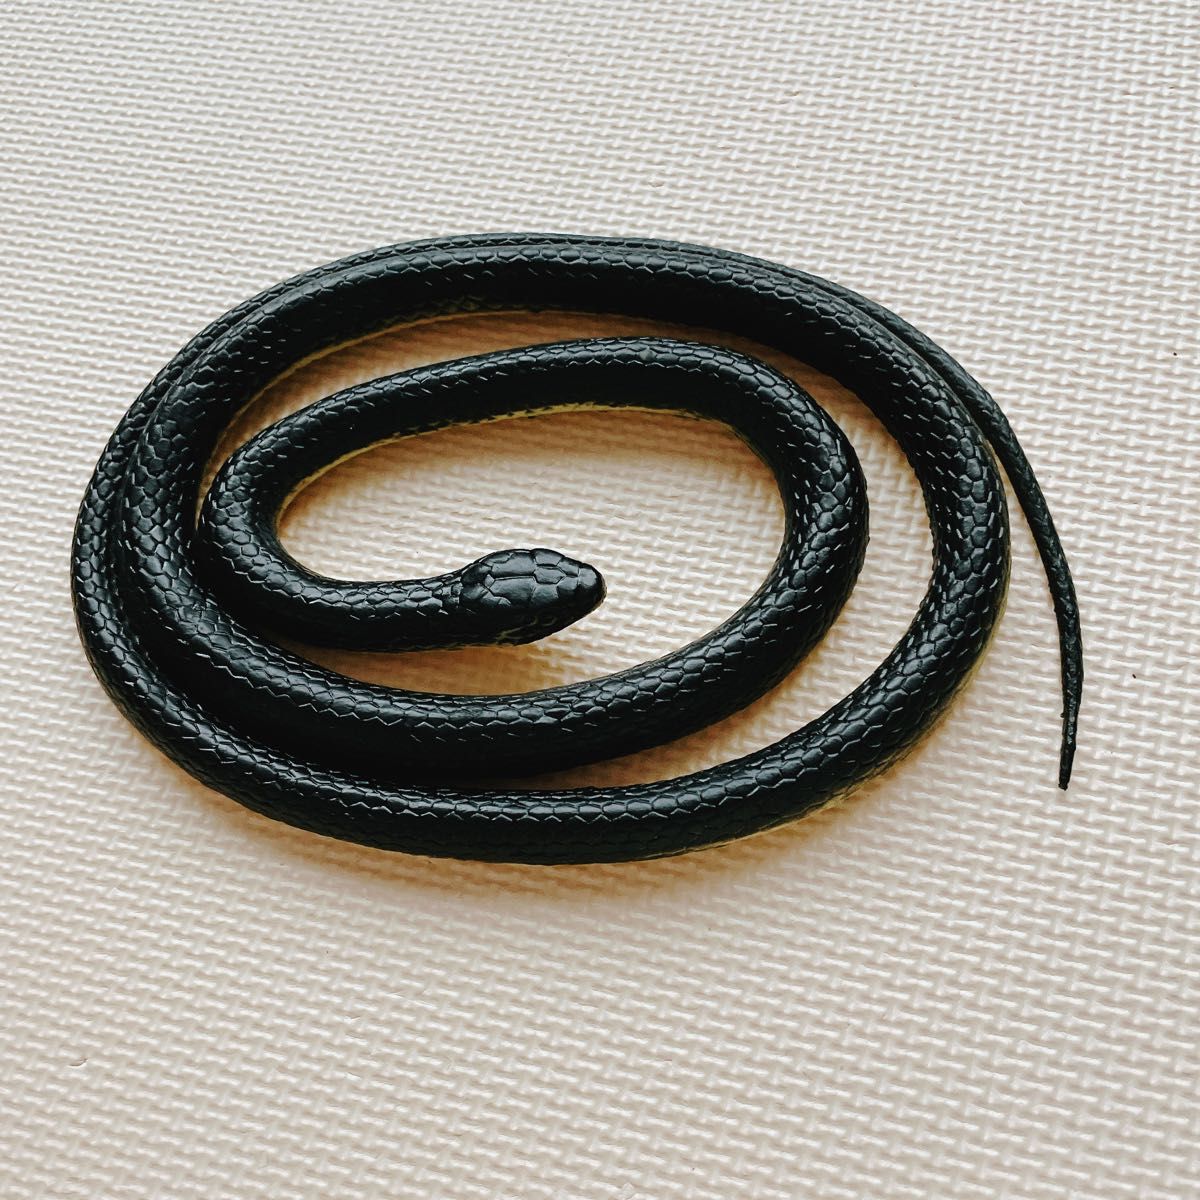 ヘビ スネーク 蛇 いたずらグッズ ゴム製 おもちゃ 蛇モデル 鳥避け ドッキリ